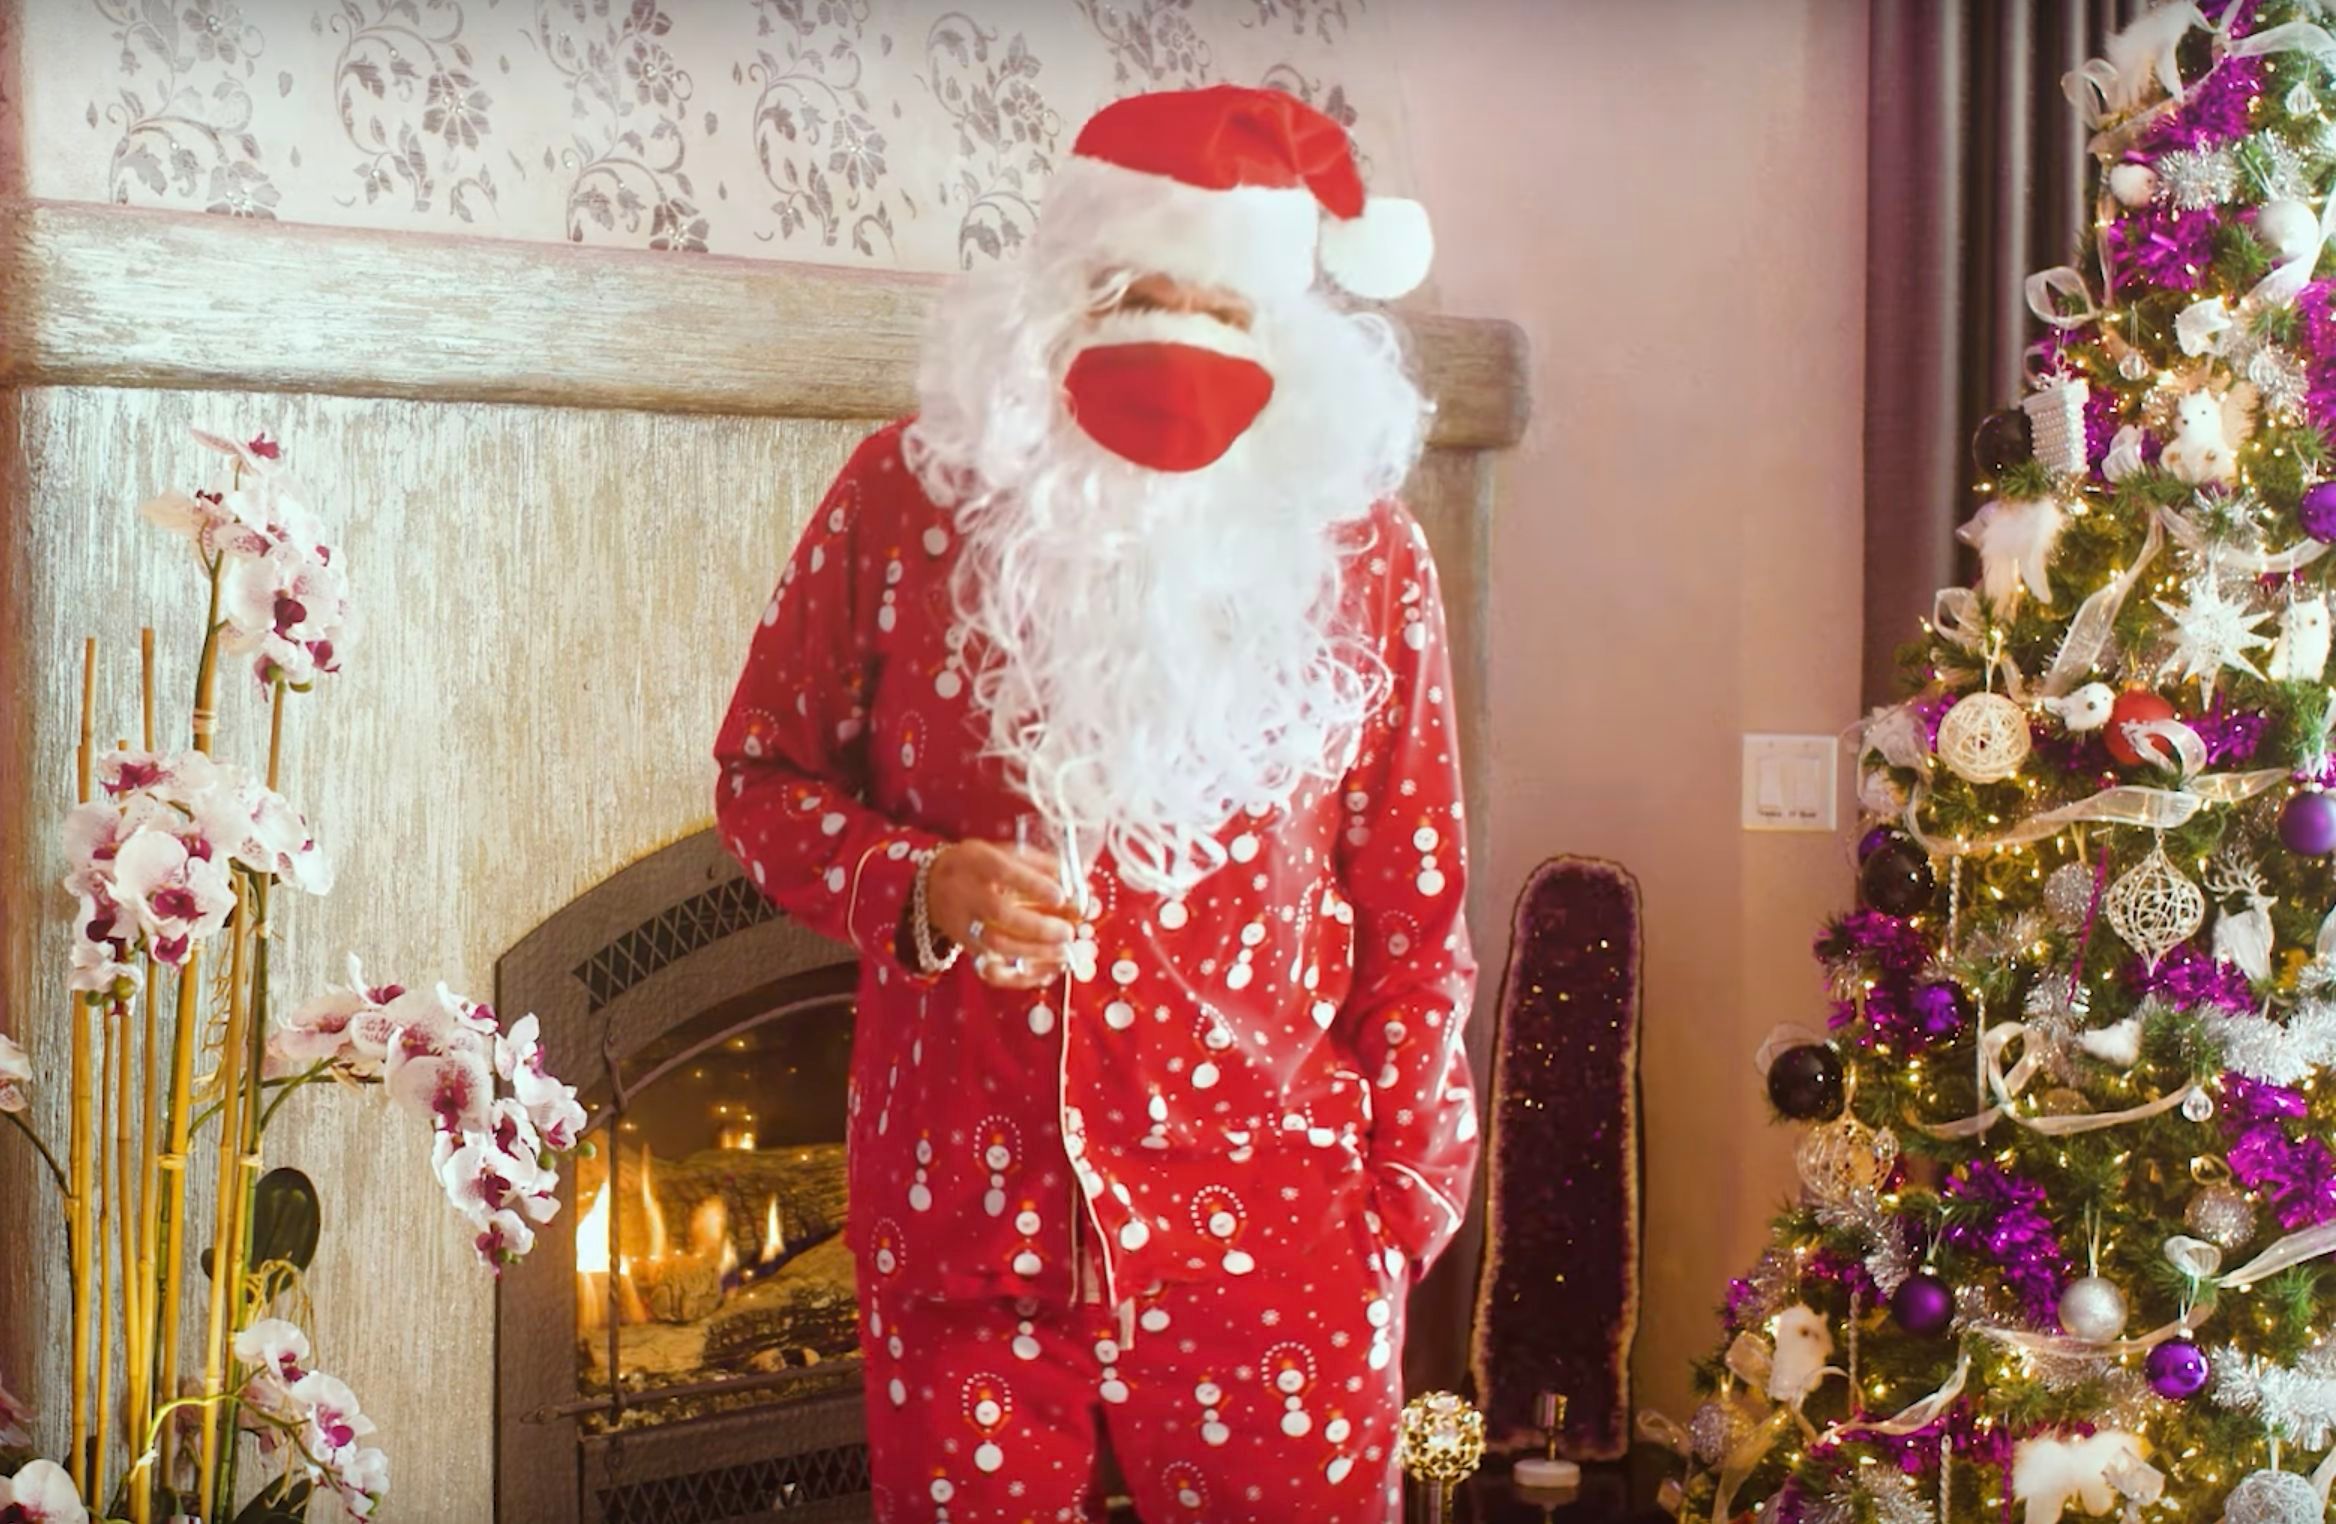 David Coverdale sendet Video-Weihnachtsgrüße im Santa-Kostüm